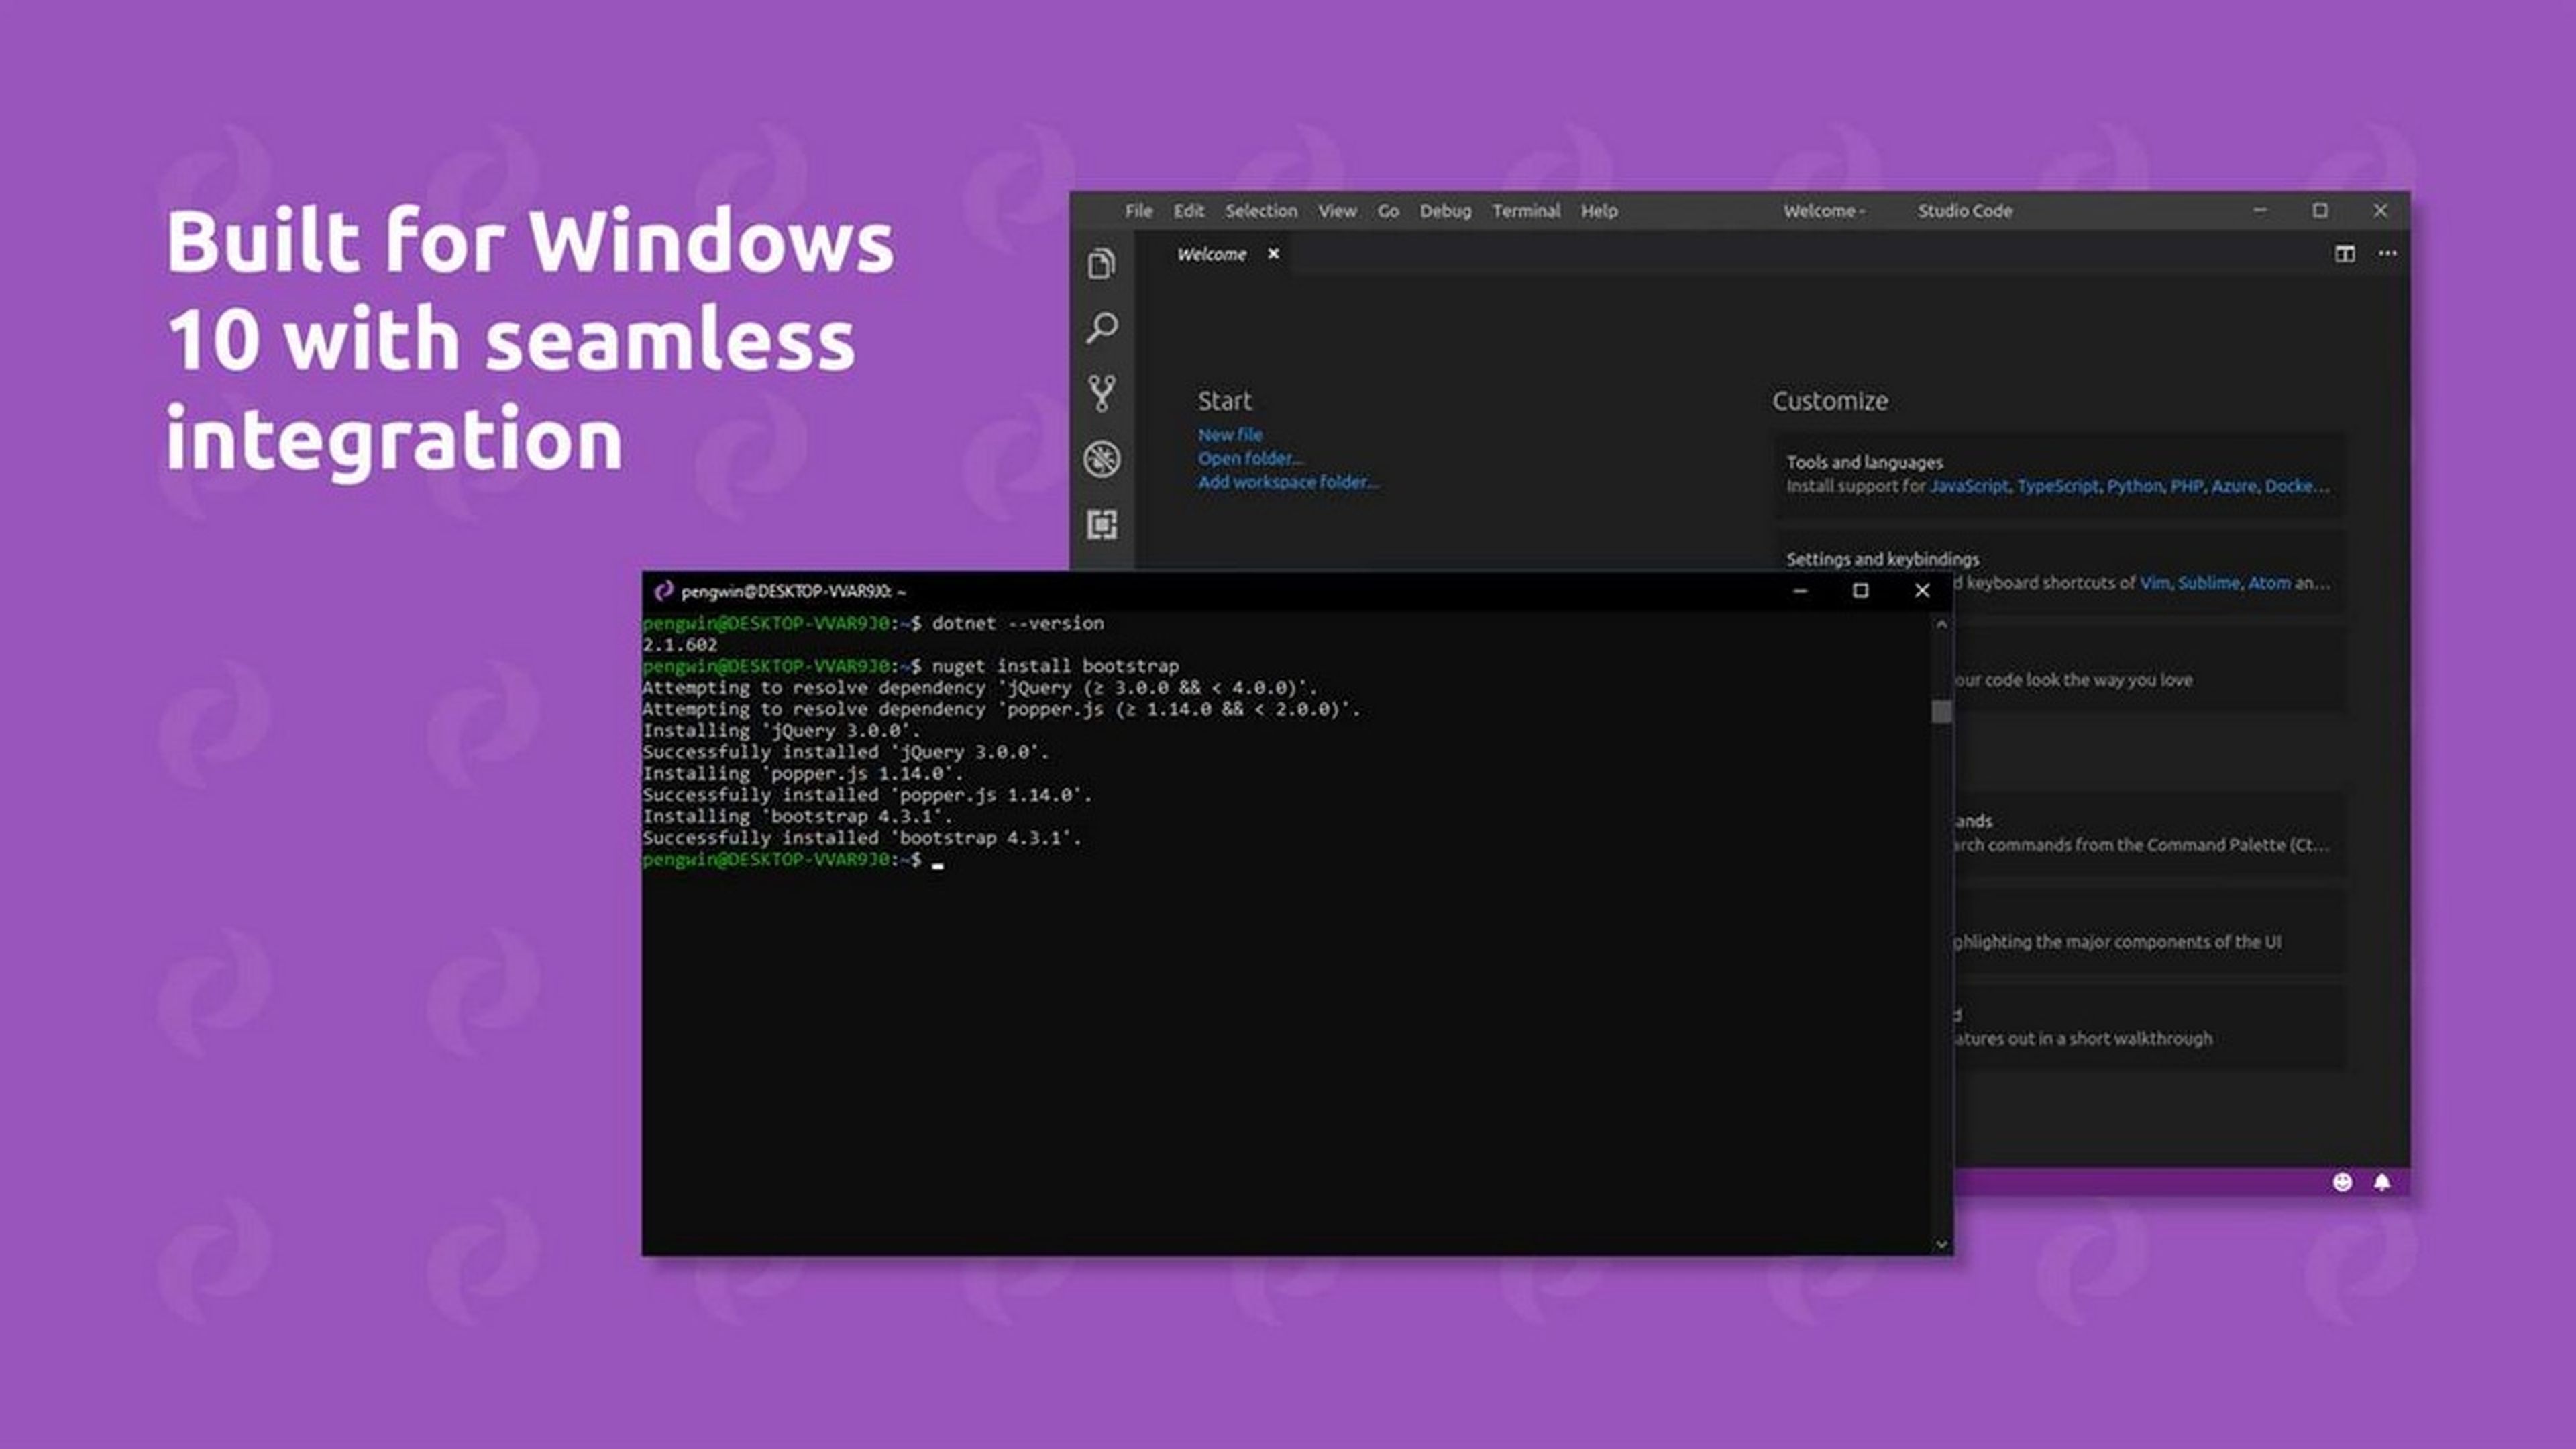 Pengwin, la distro de Linux creada para funcionar en Windows 10